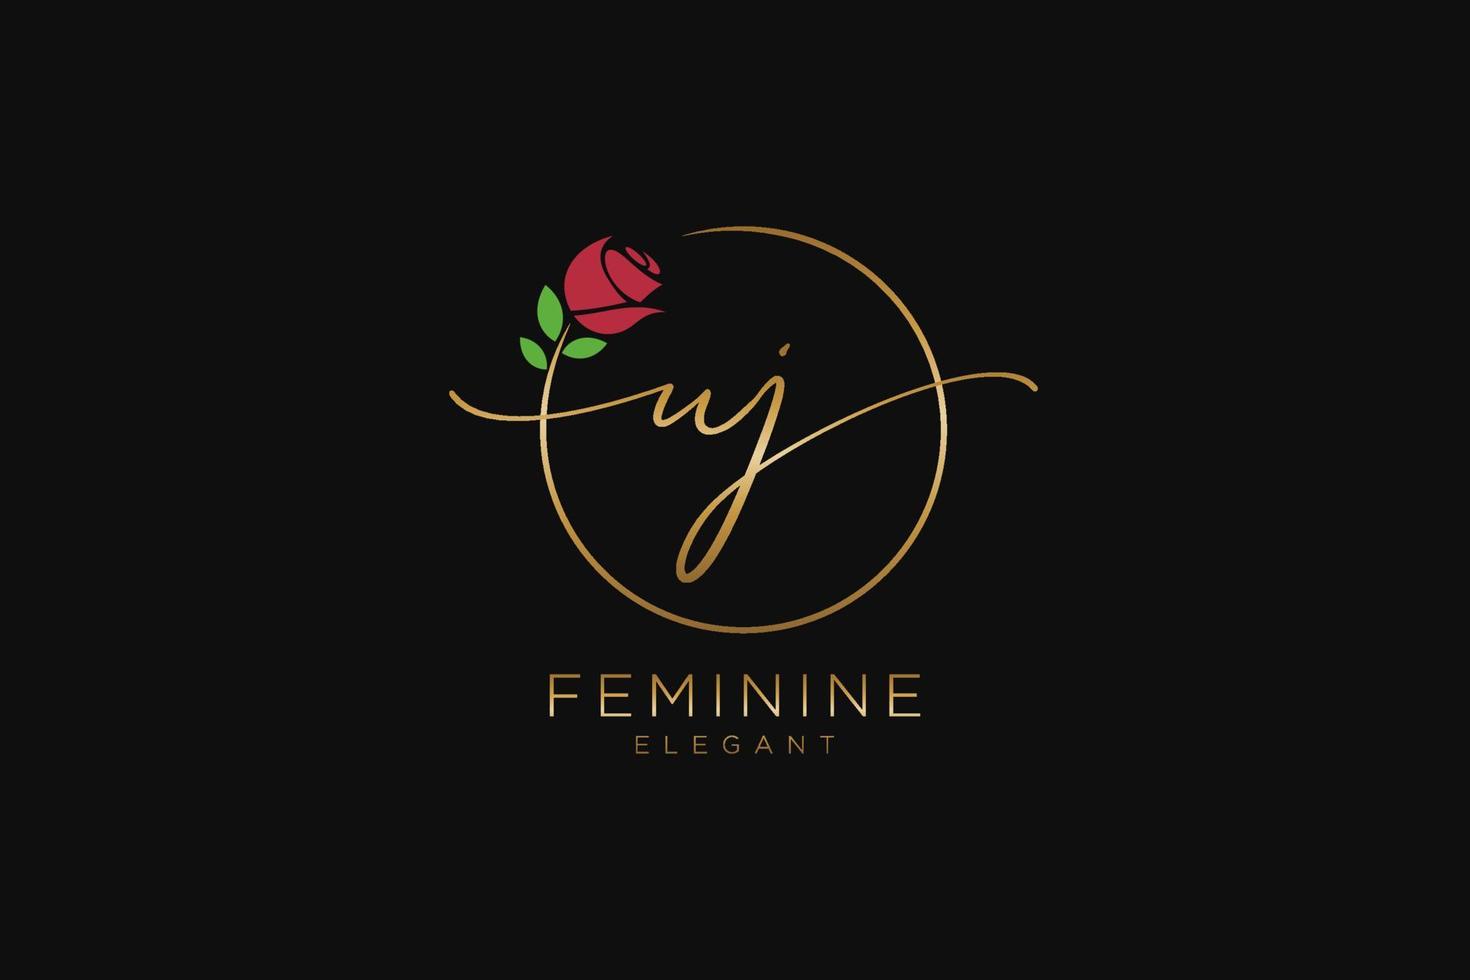 monogramme de beauté du logo féminin initial uj et design élégant du logo, logo manuscrit de la signature initiale, mariage, mode, floral et botanique avec modèle créatif. vecteur